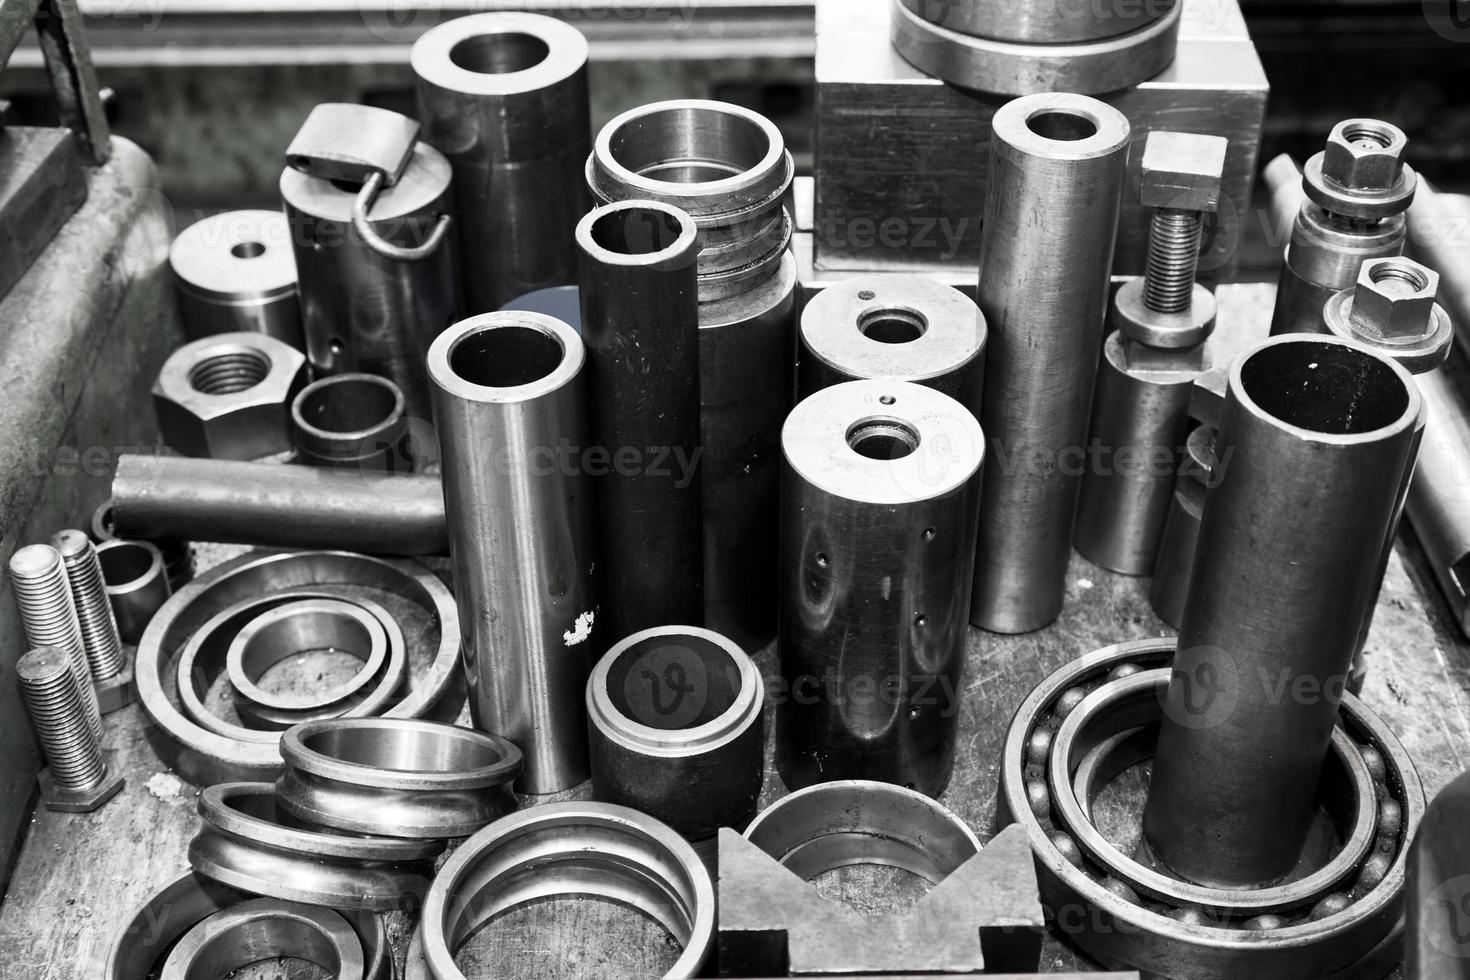 cilindros de acero, pistones y herramientas en taller. tema de la industria. foto